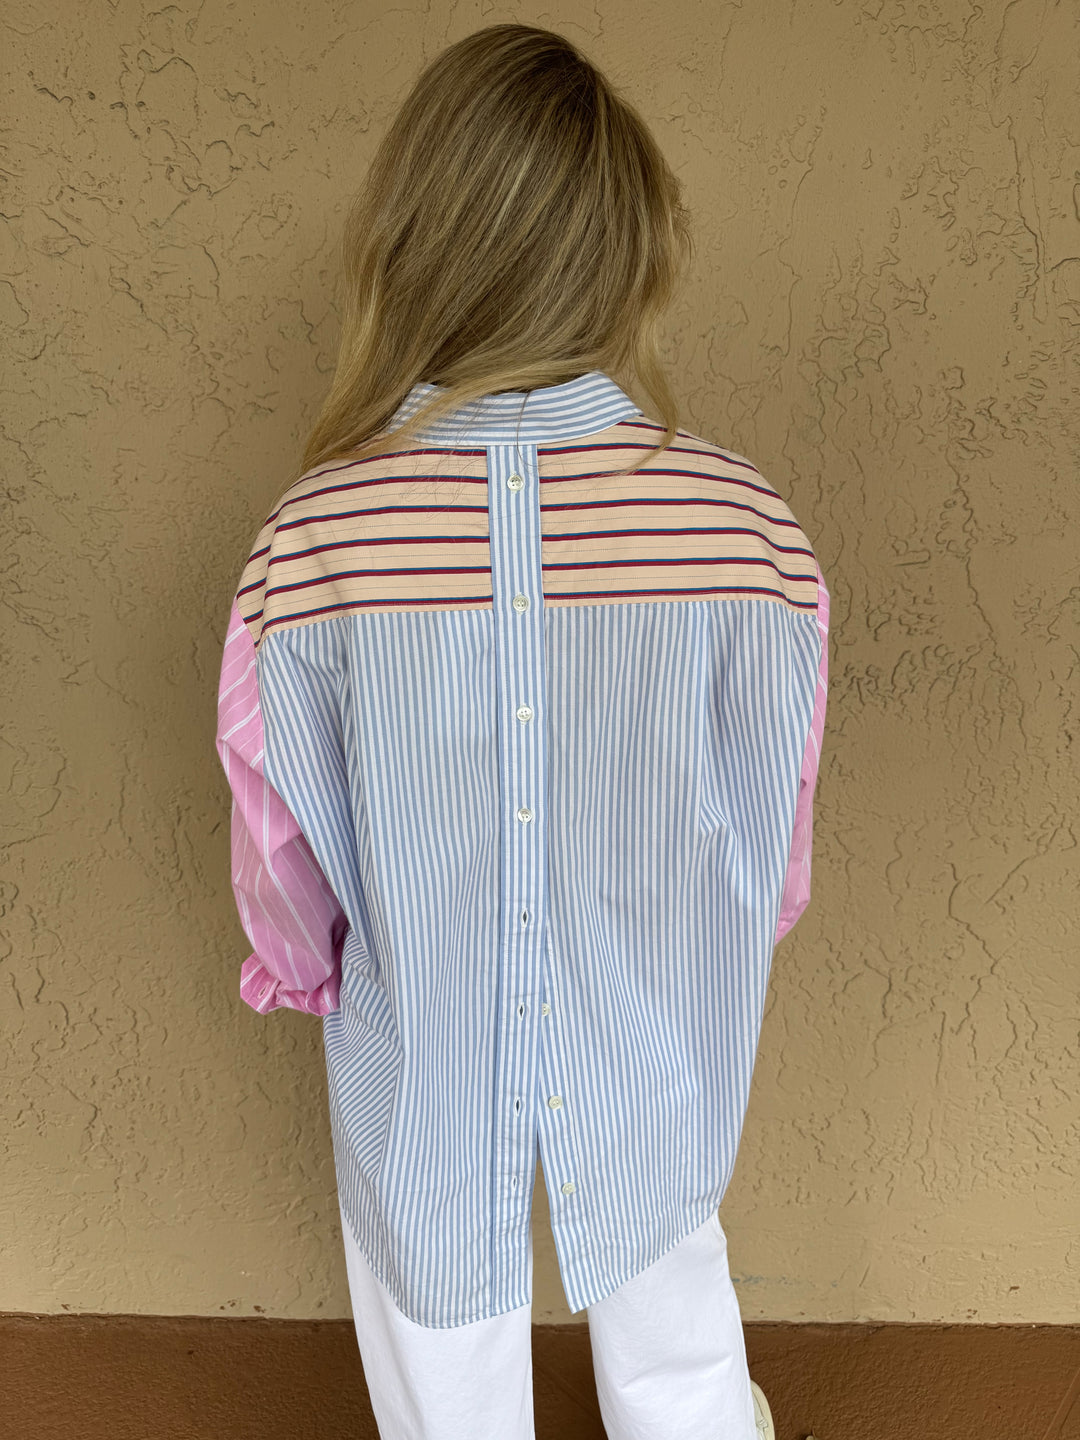 Essentiel Antwerp Famille Patchwork Stripe Shirt - Back View